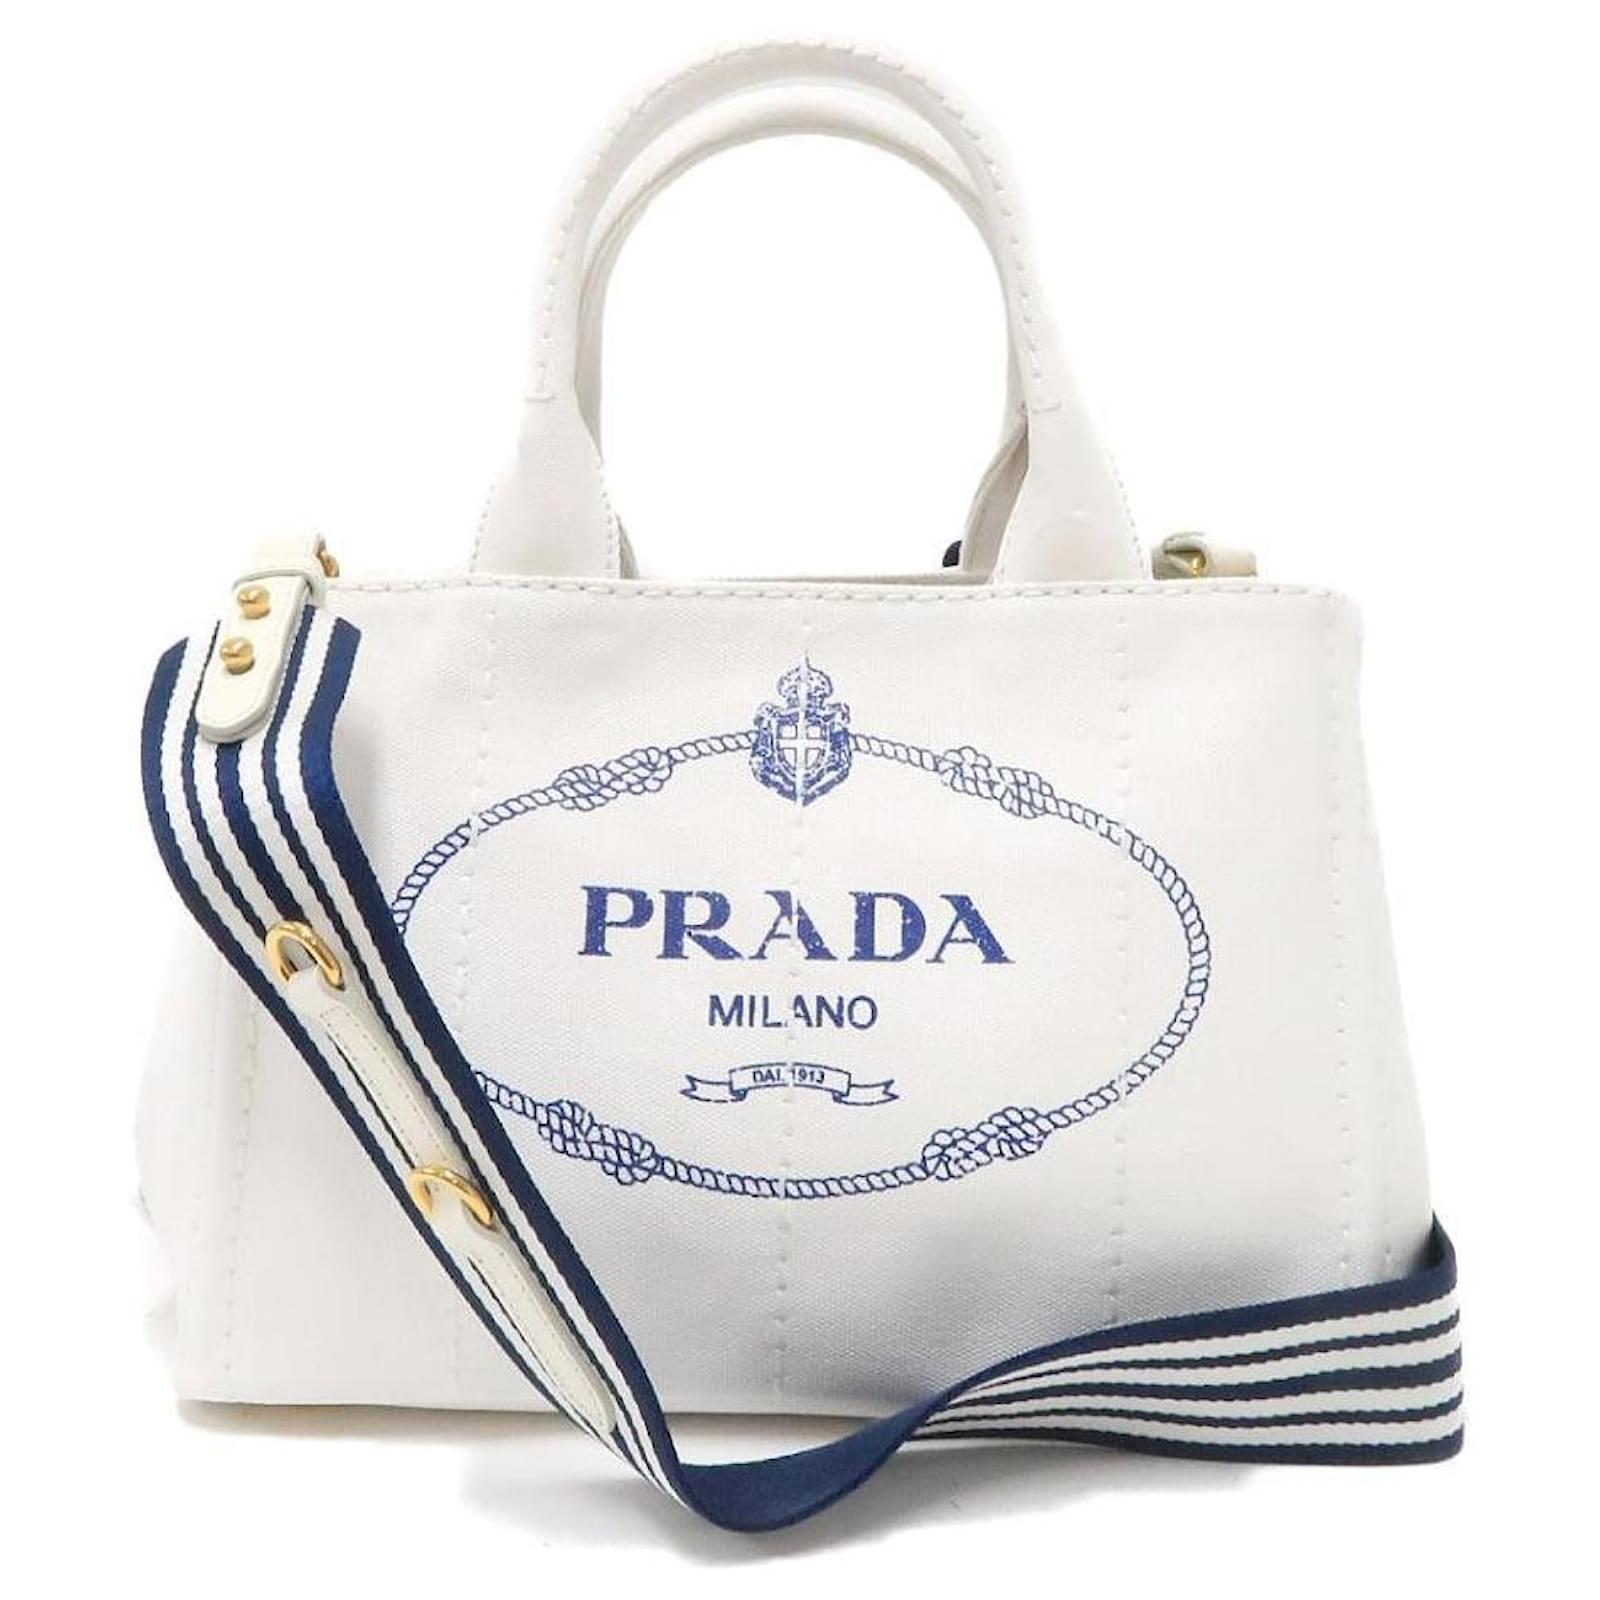 Prada Pre-Owned Designer Handbags in Pre-Owned - Walmart.com